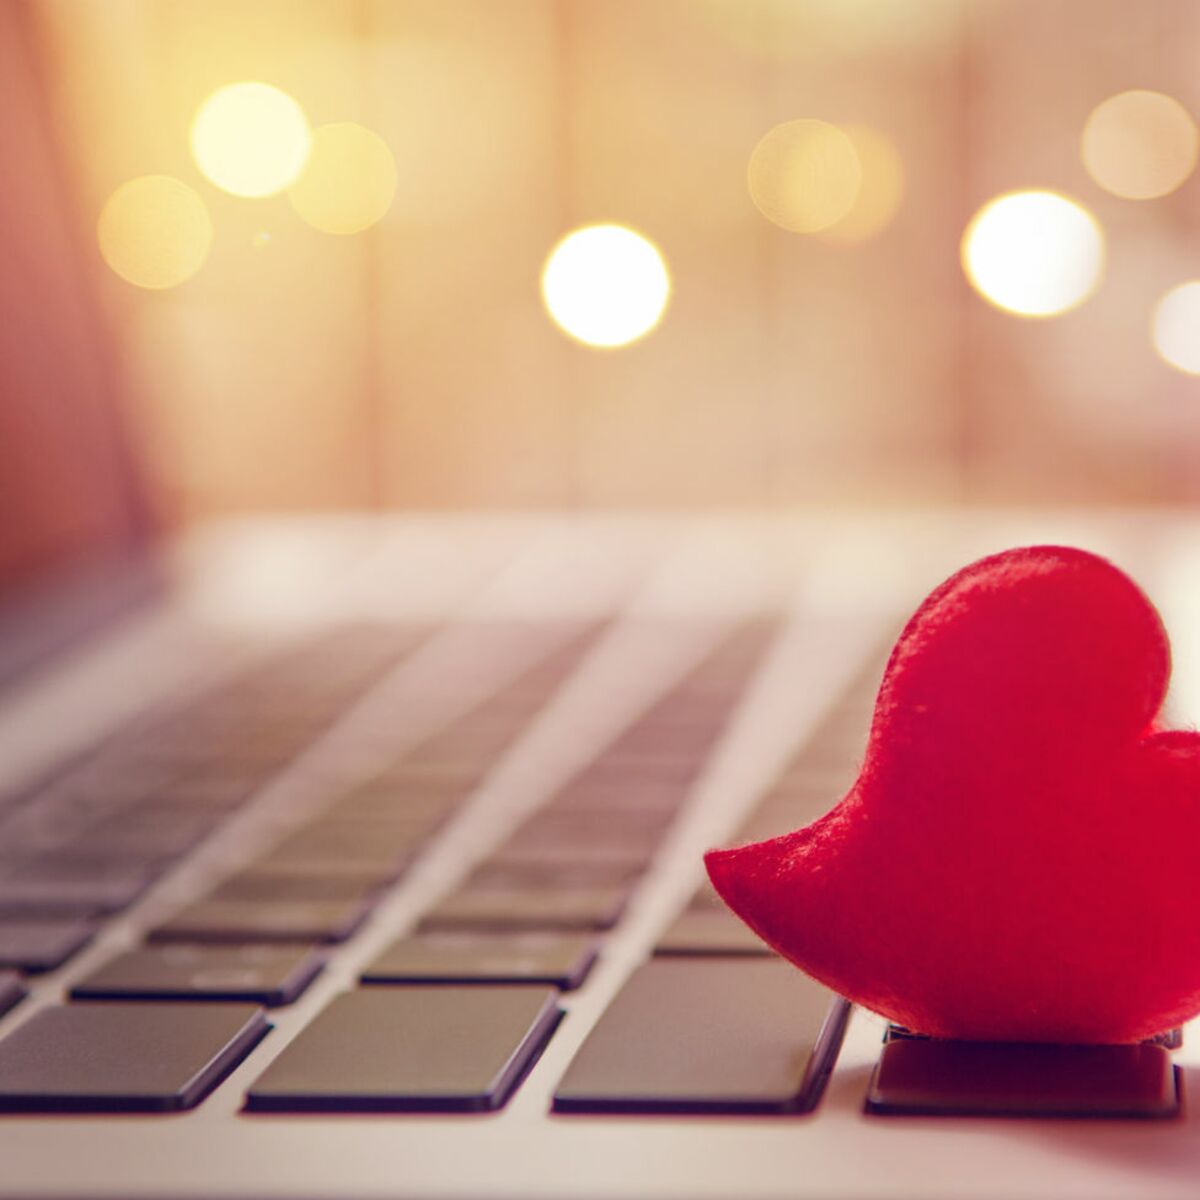 Peut-on vraiment trouver l’amour sur internet ?